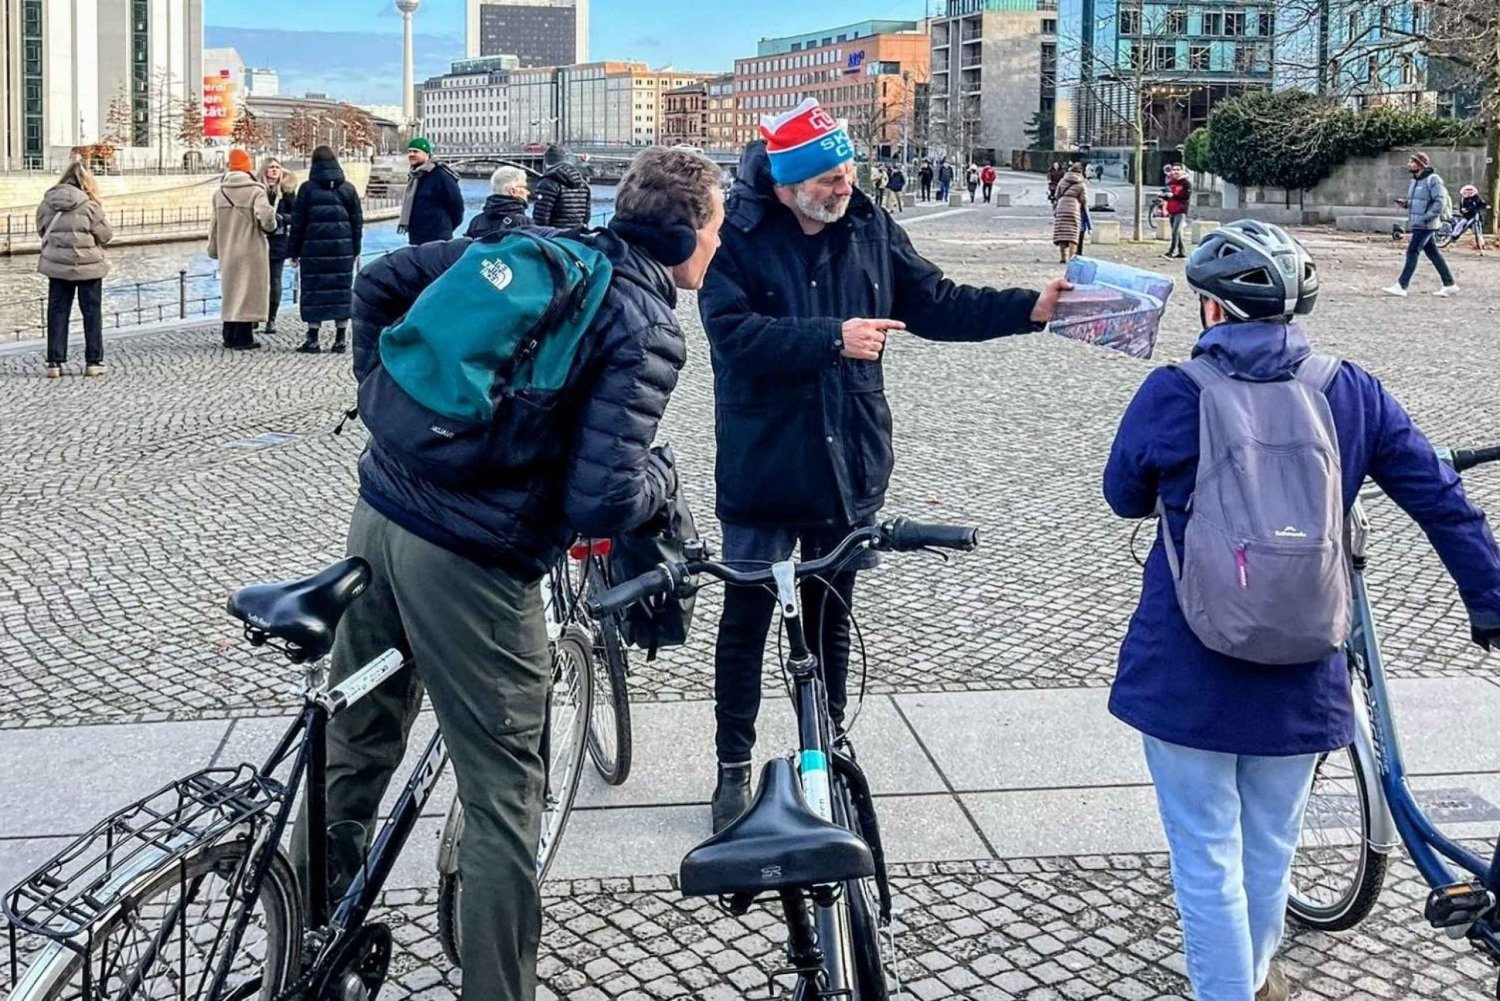 Tour Berlín Este Oeste y Muro: Los principales monumentos individuales en bicicleta